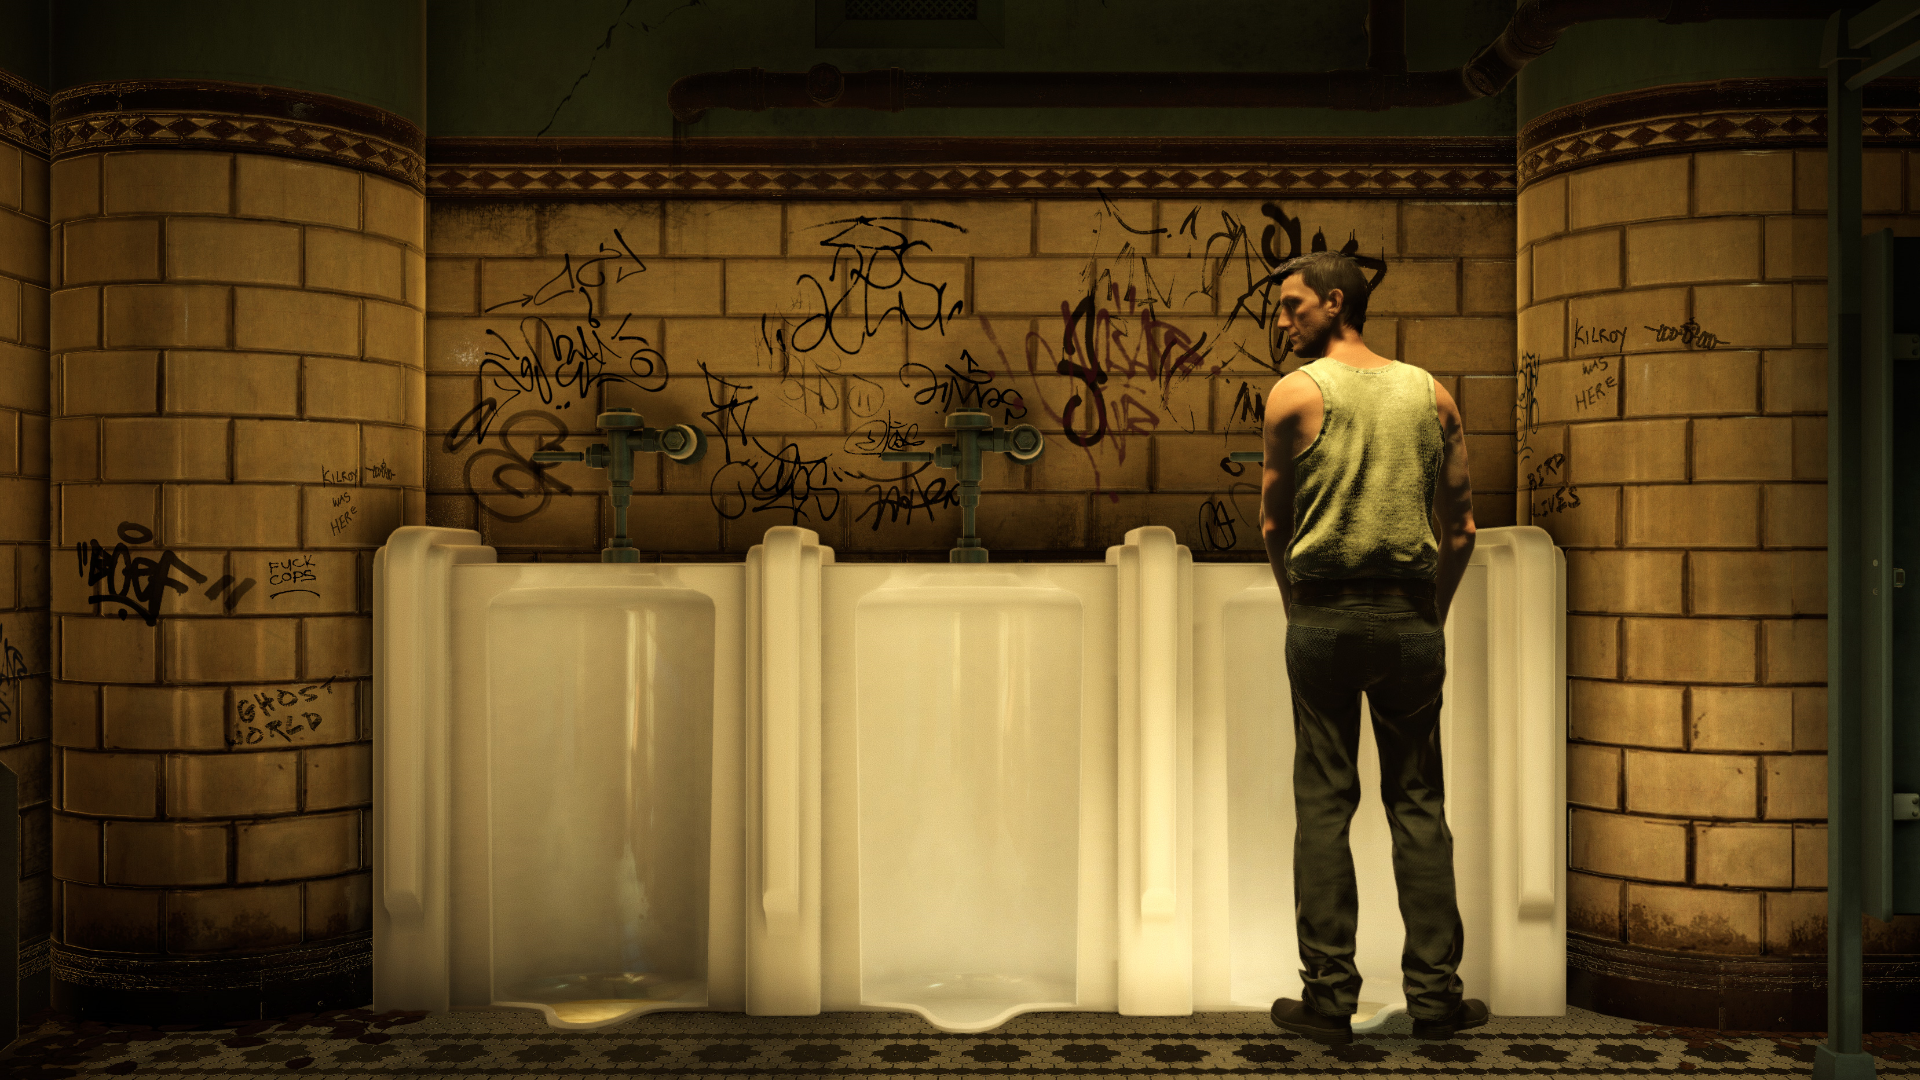 A man stands at a urinal.